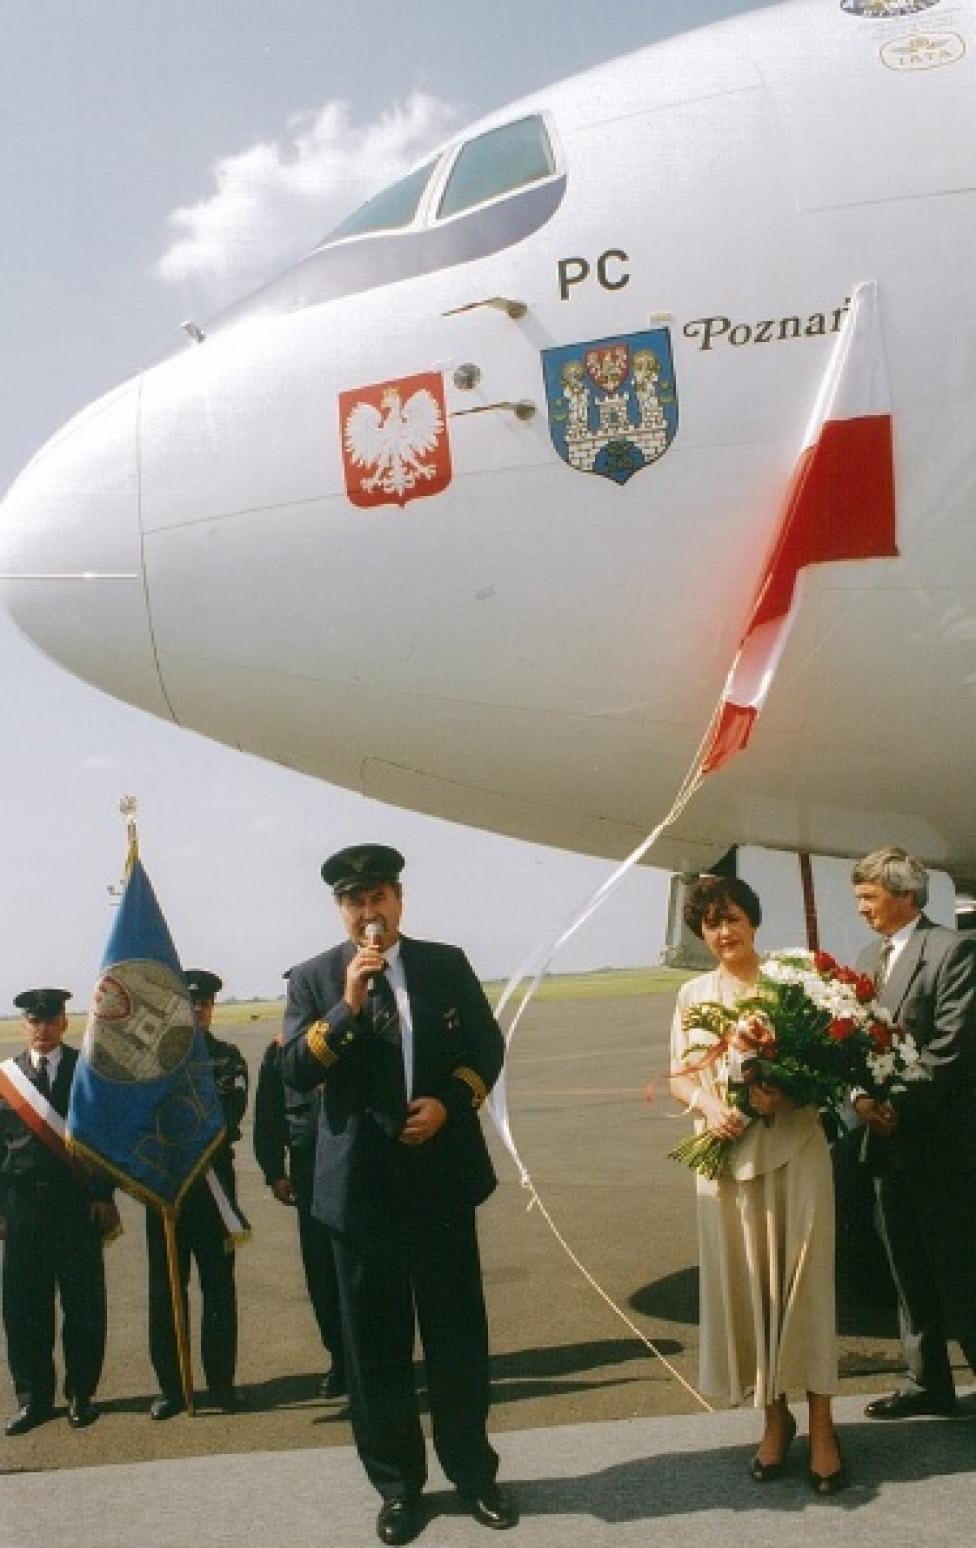 Chrzest B763 SP-LPC na lotnisku w Poznaniu. Pod samolotem kpt. Jerzy Góźdź i matka chrzestna Jadwiga Rotnicka